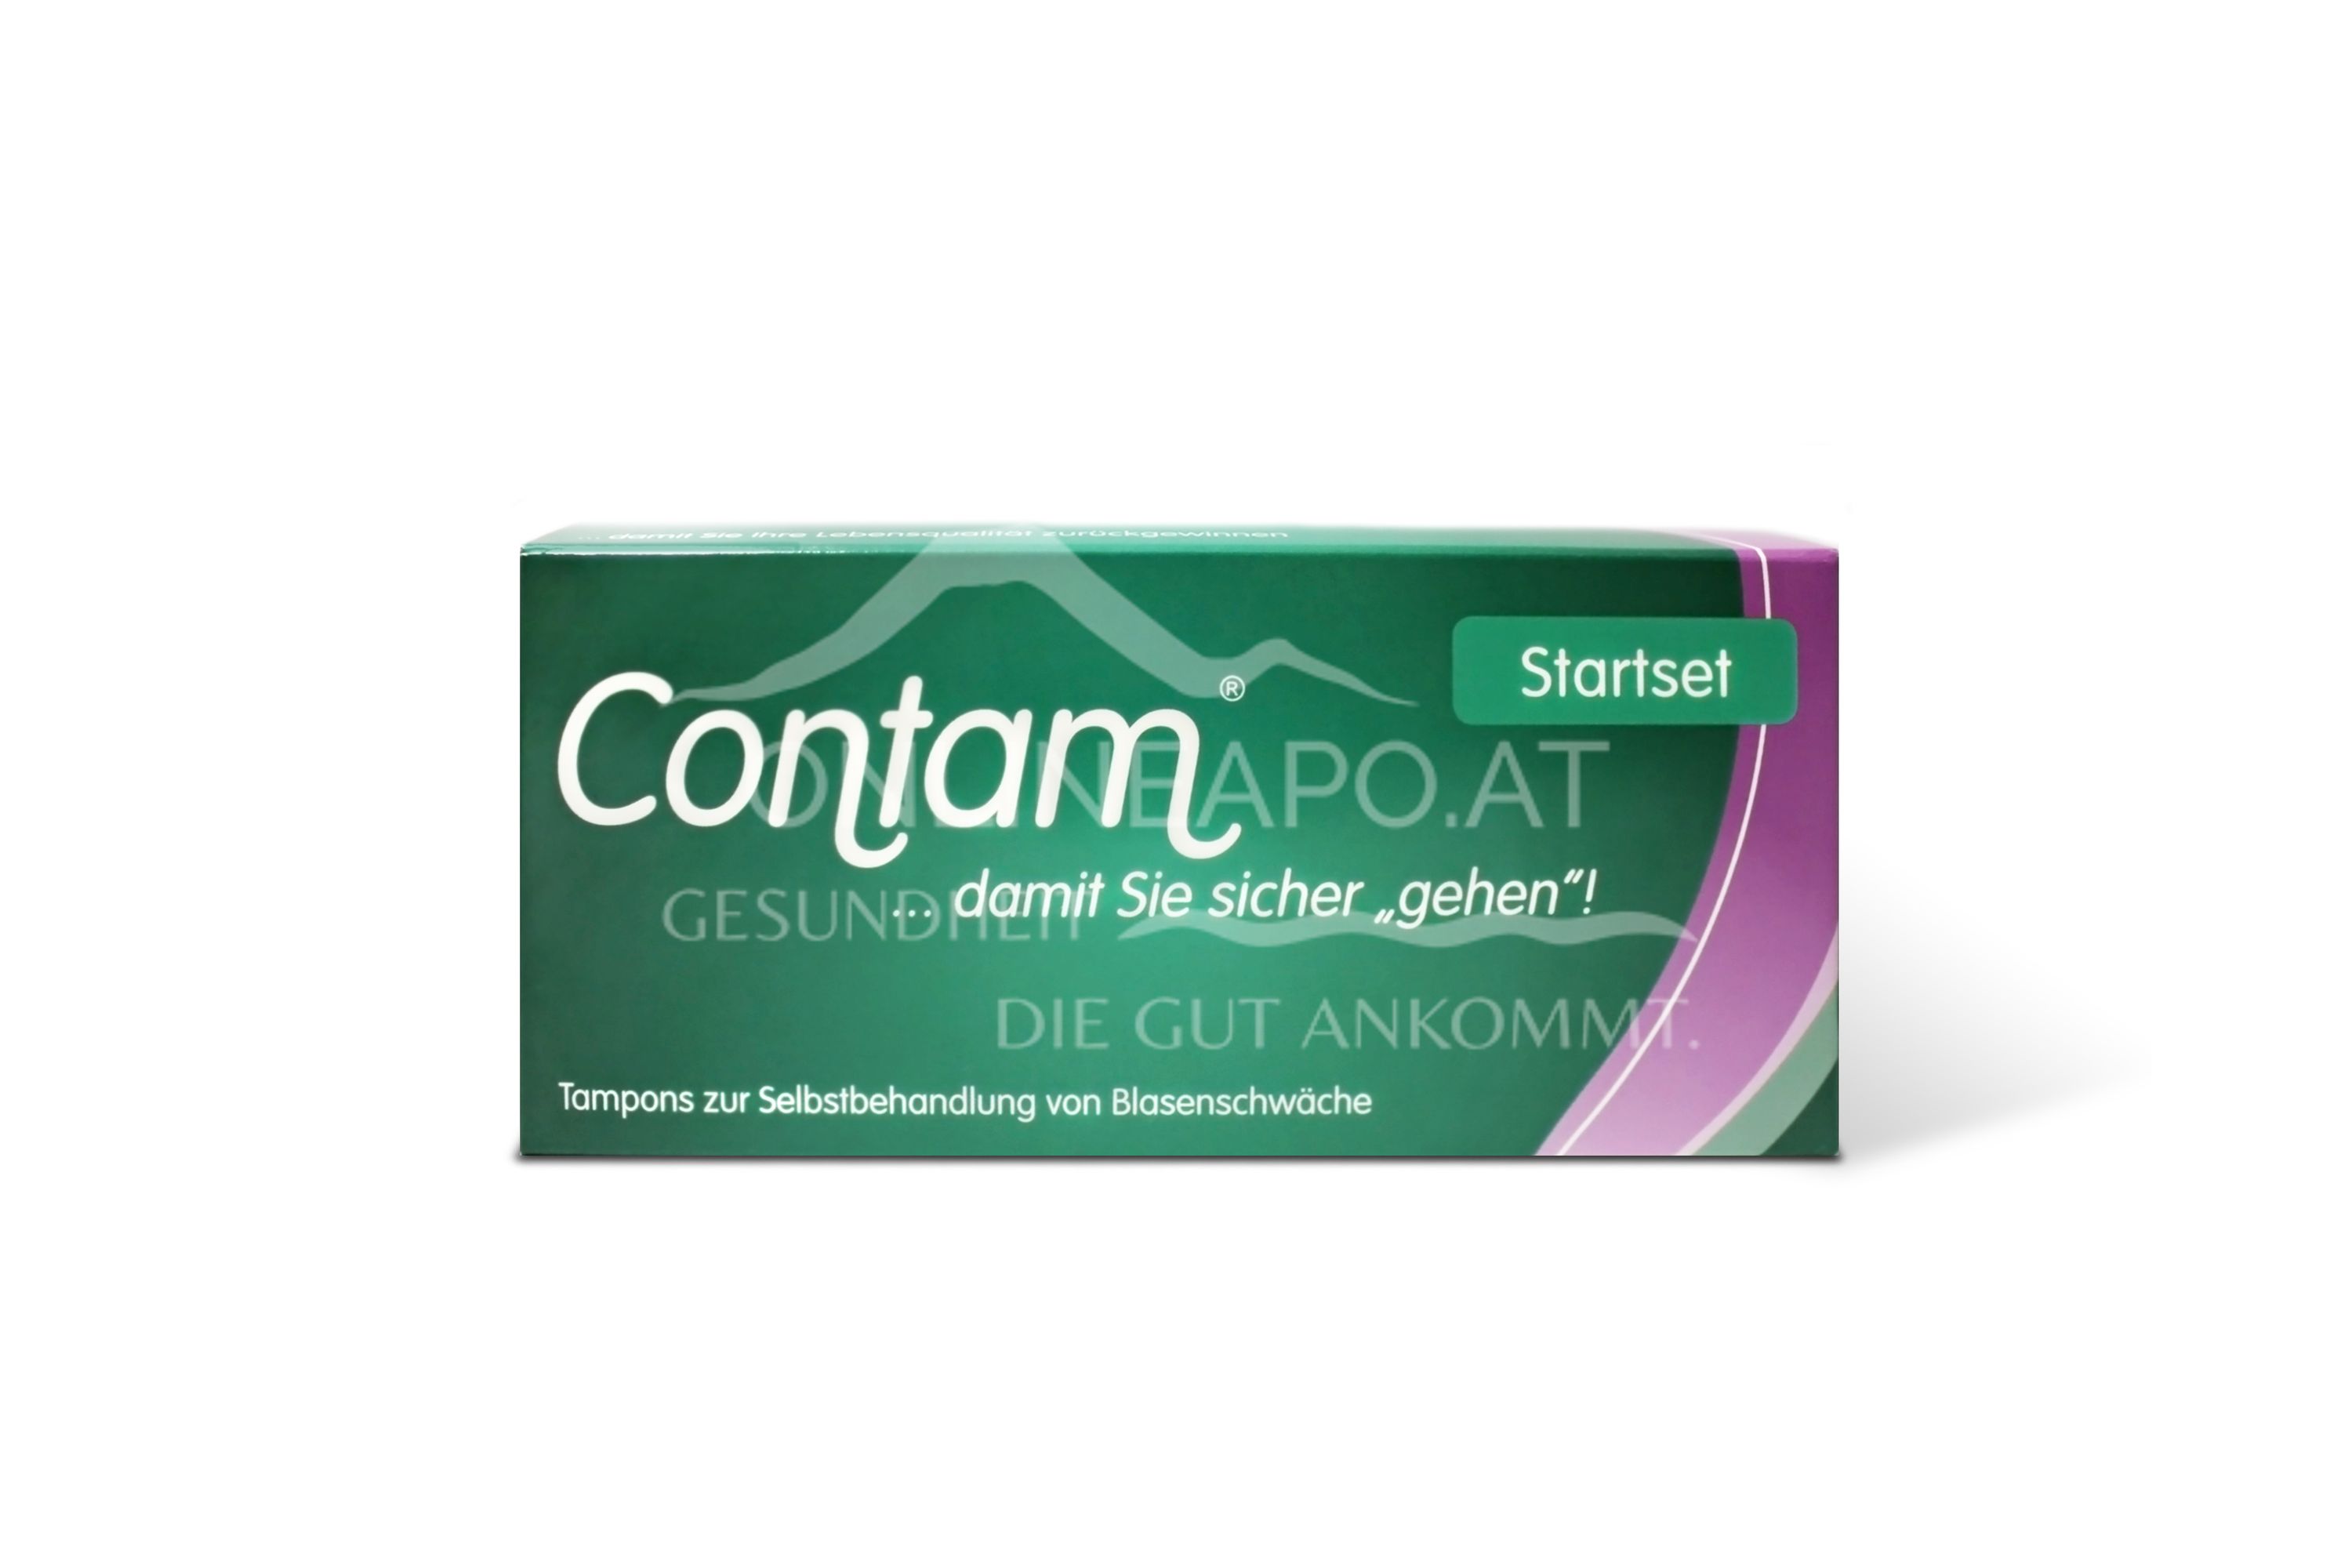 Contam® Vaginaltampon Starterset